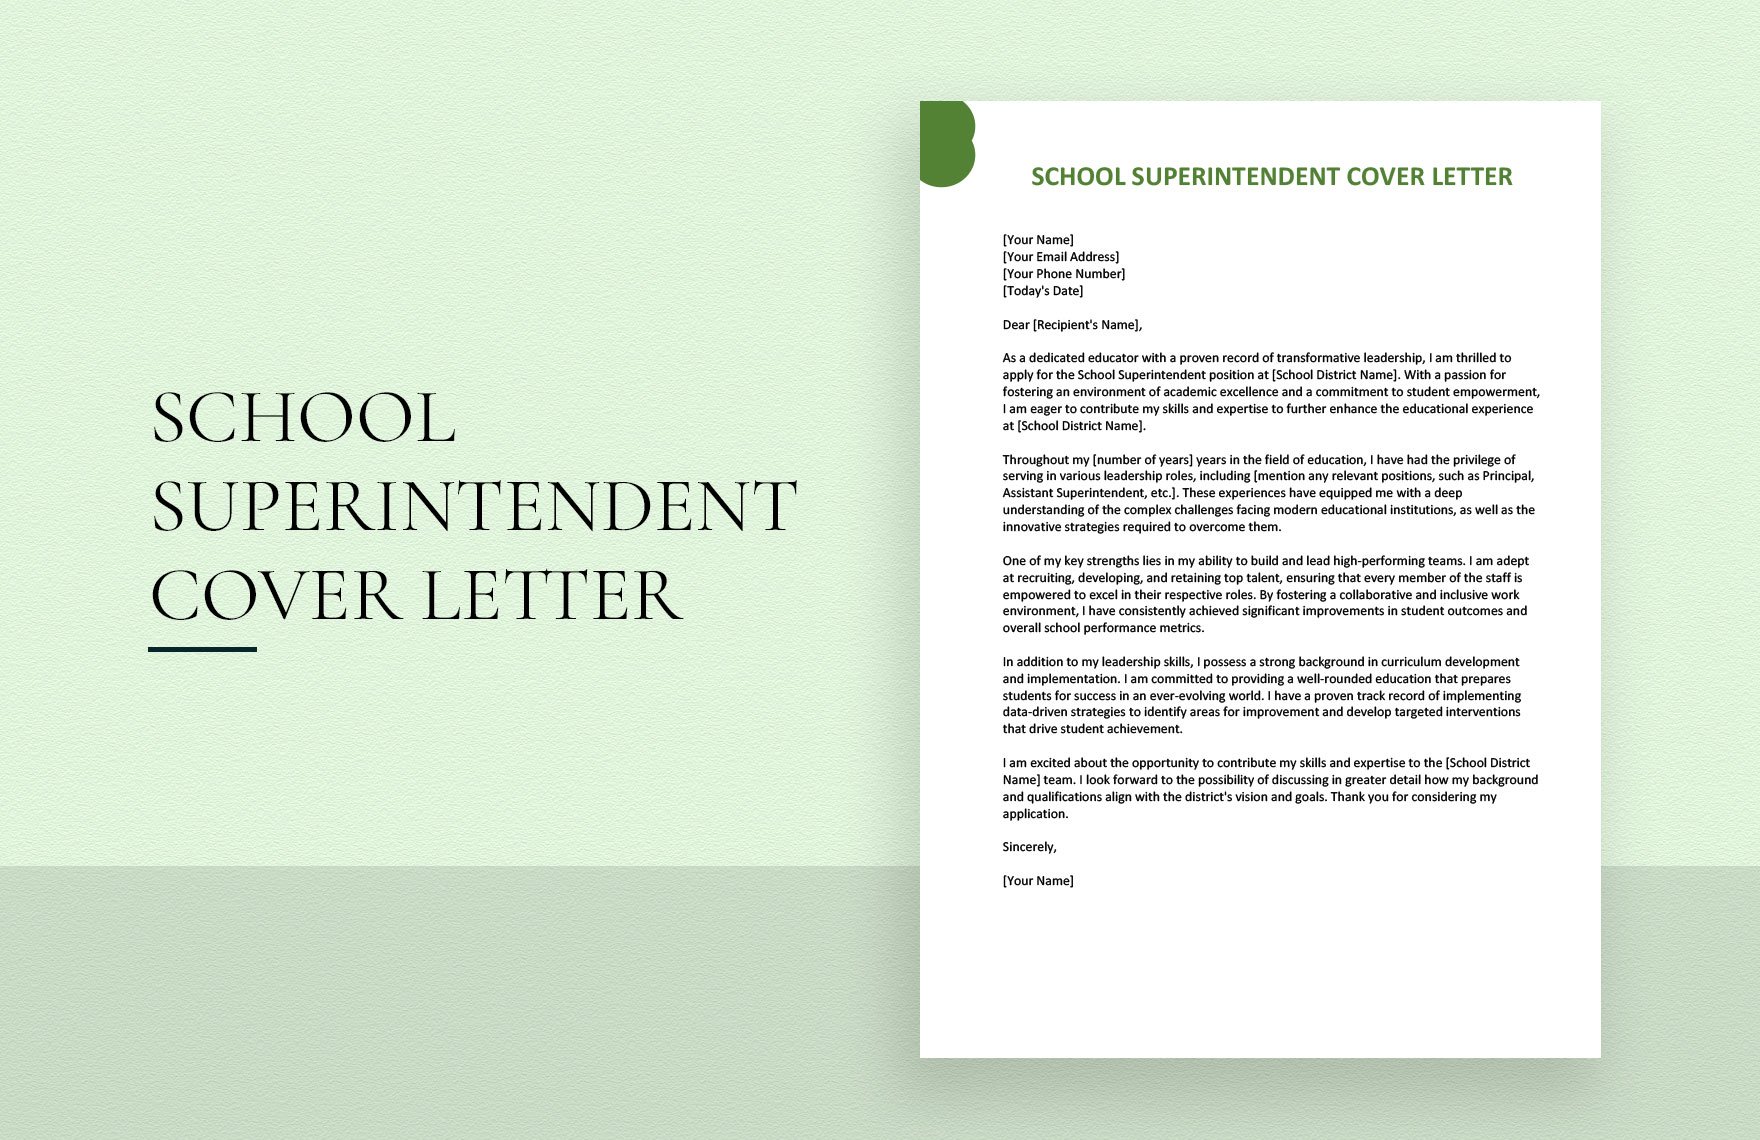 https://images.template.net/154590/school-superintendent-cover-letter-lgjhm.jpg